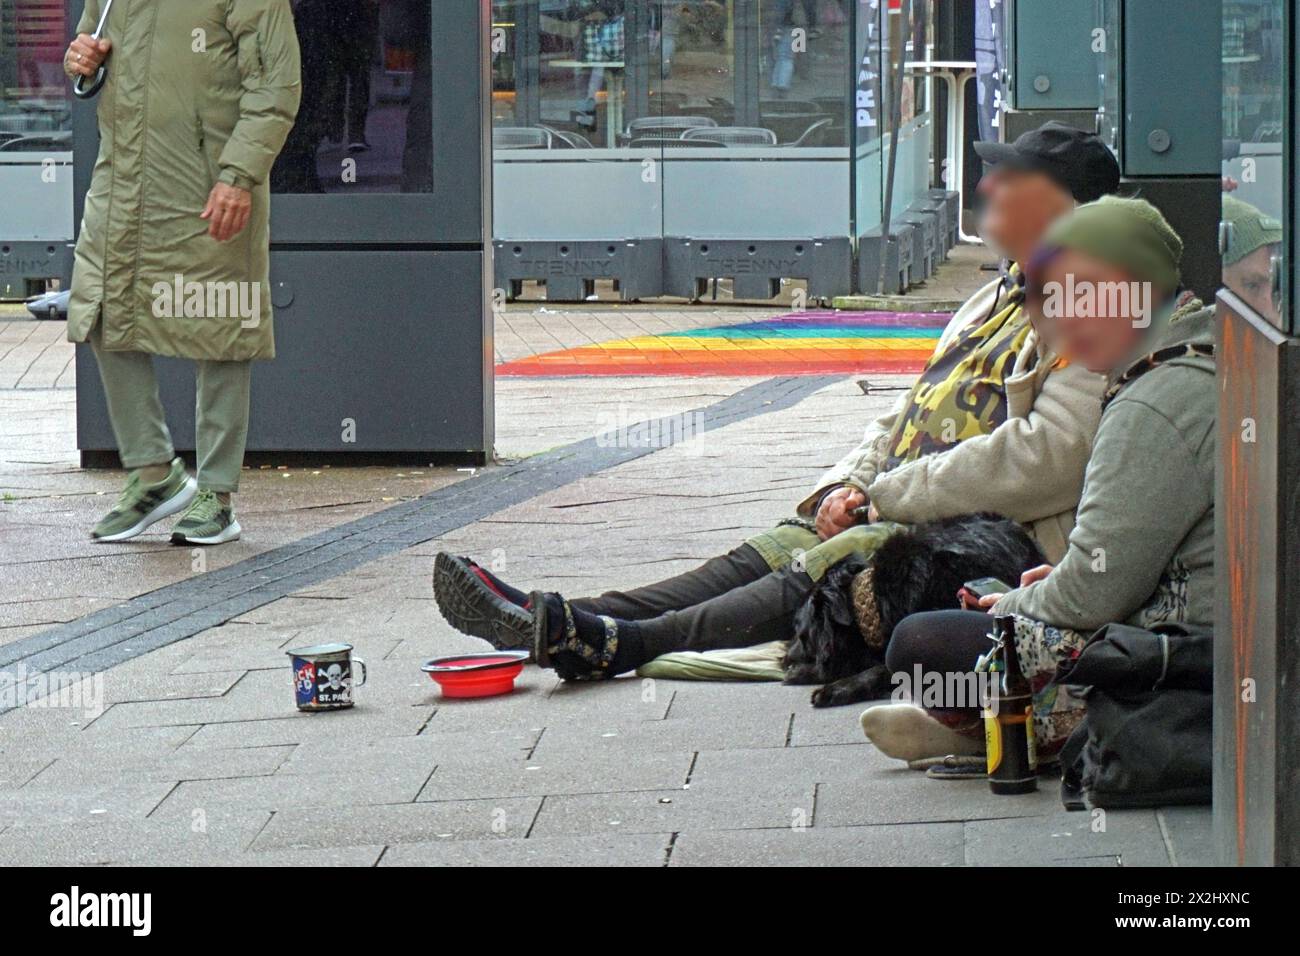 Armutsschicksale in Deutschland Obdachlose Personen sitzen auf dem Boden einer Einkaufsstraße und Bitten um ein Almosen *** Schicksal der Armut in Deutschland Obdachlose sitzen auf dem Boden einer Einkaufsstraße und bitten um ein Handout Stockfoto